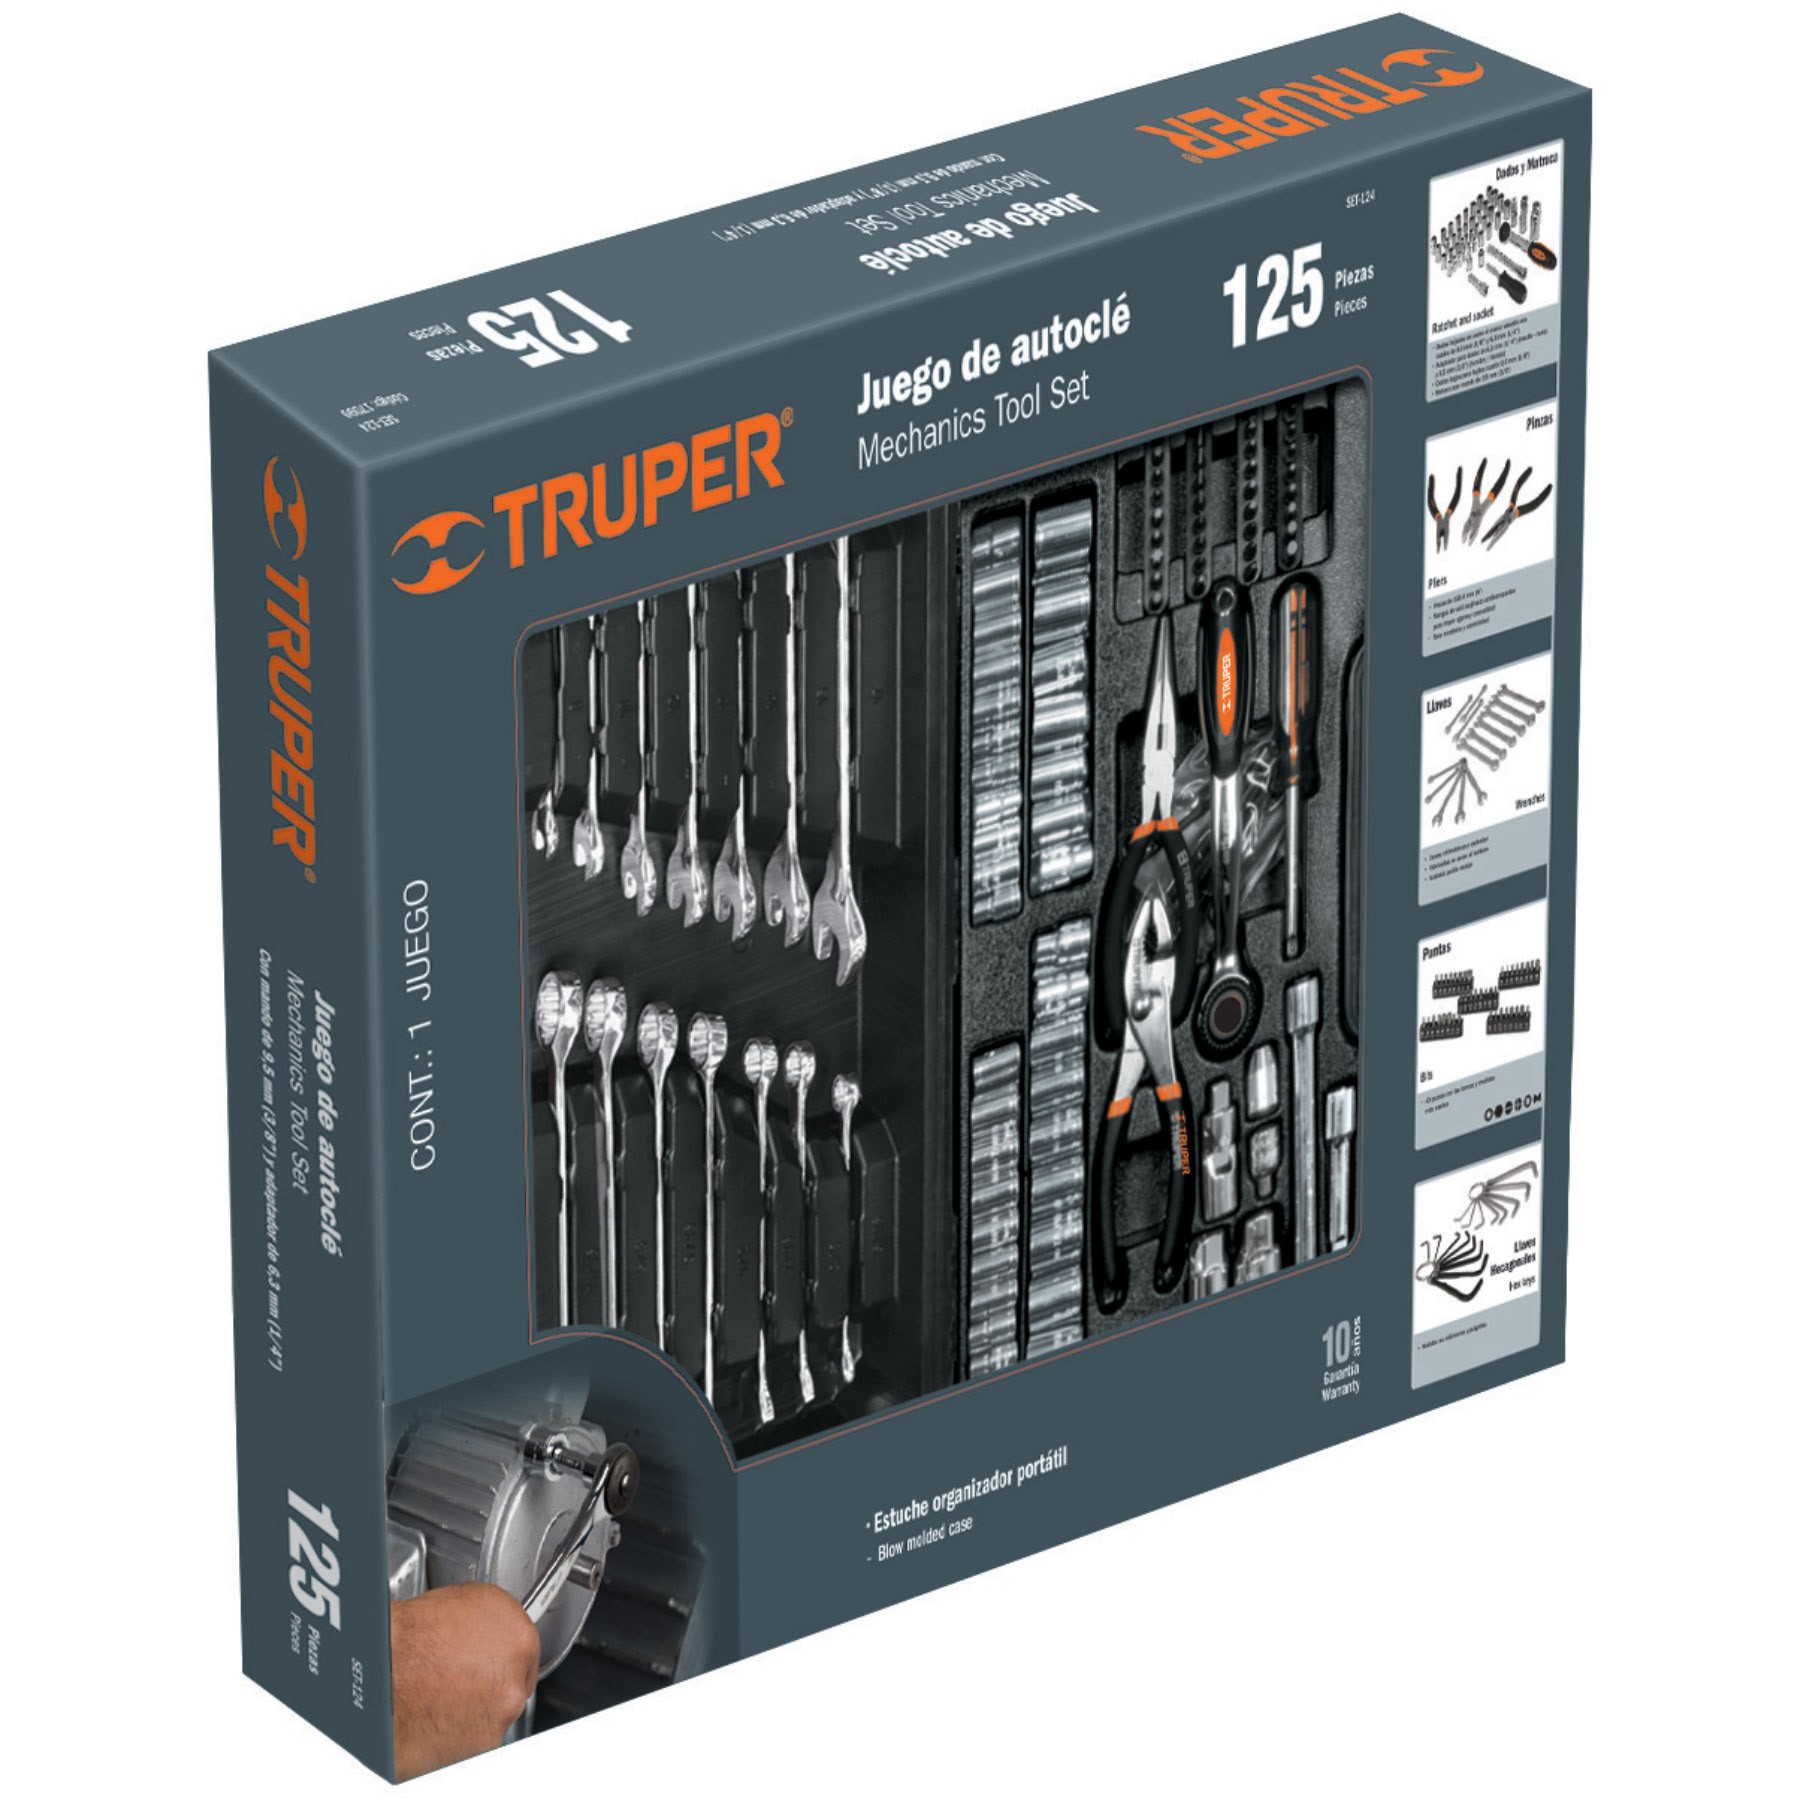 Juego de herramienta Truper para mecánico, mixto, 119 piezas